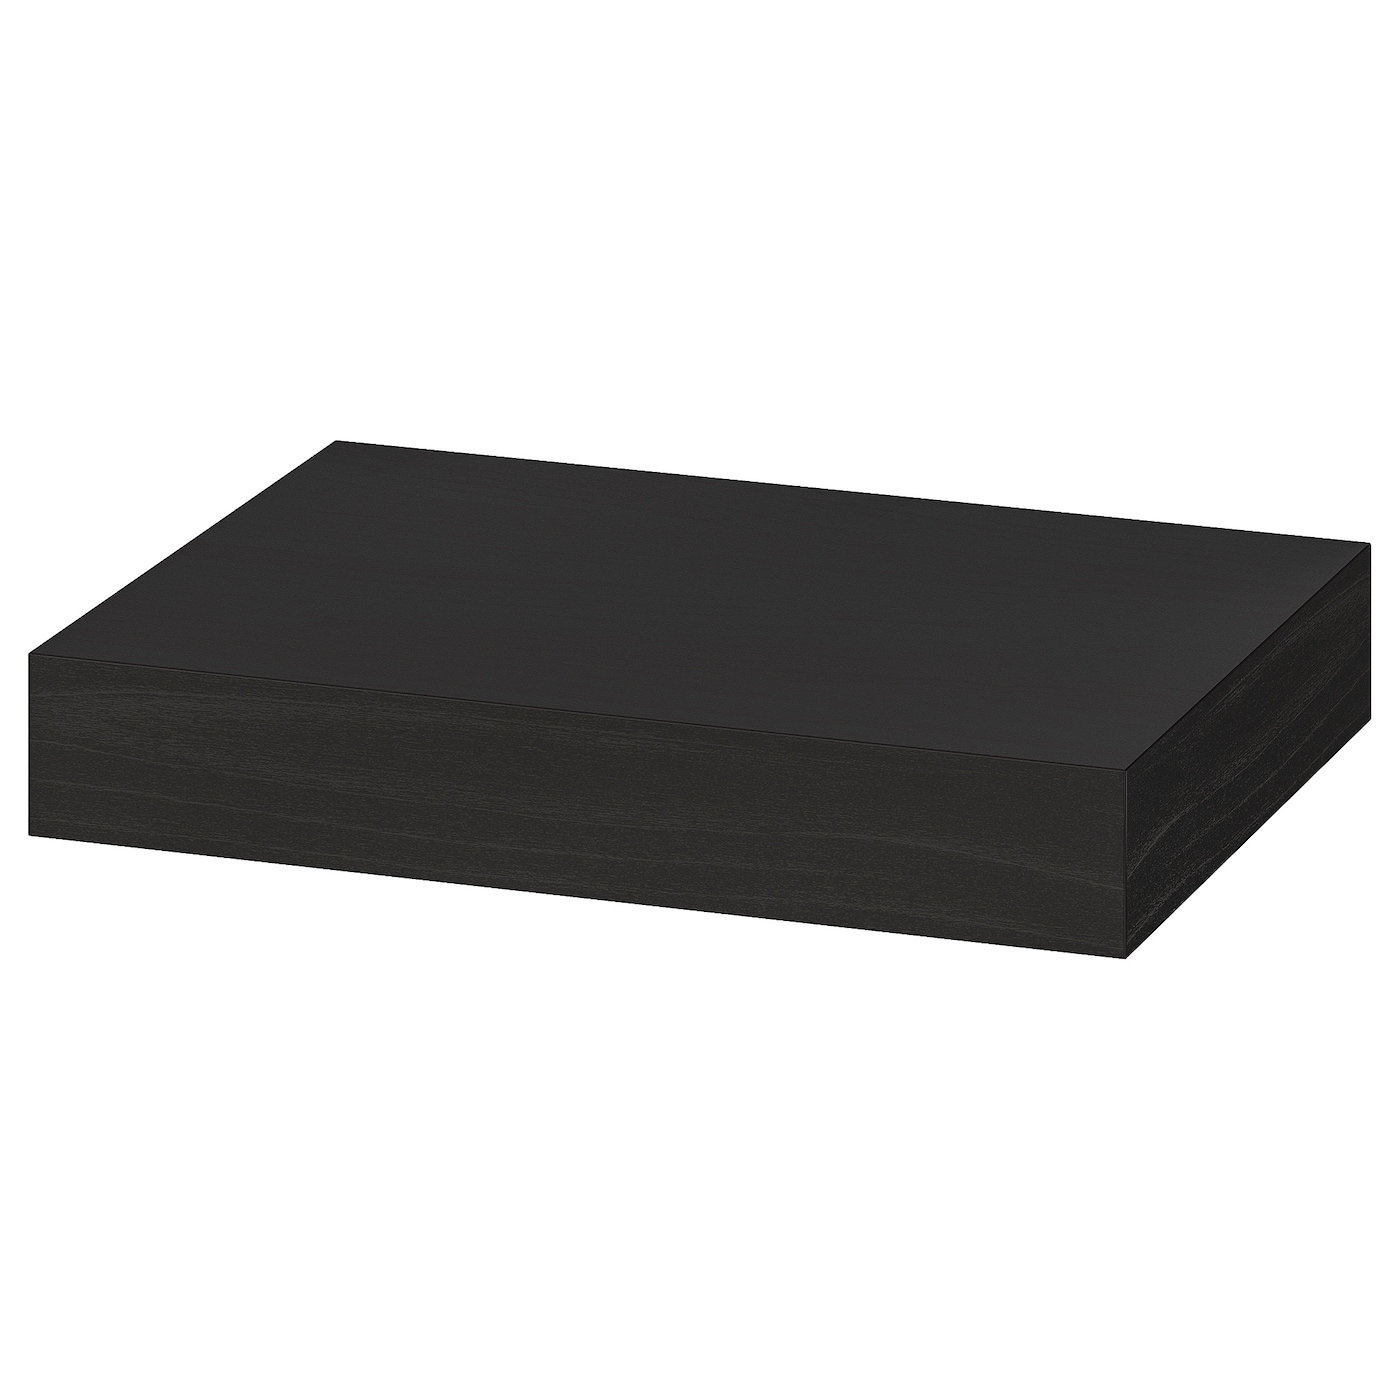 Полка настенная без ножки - LACK IKEA/ ЛАКК ИКЕА, 30x26х5 см, черная